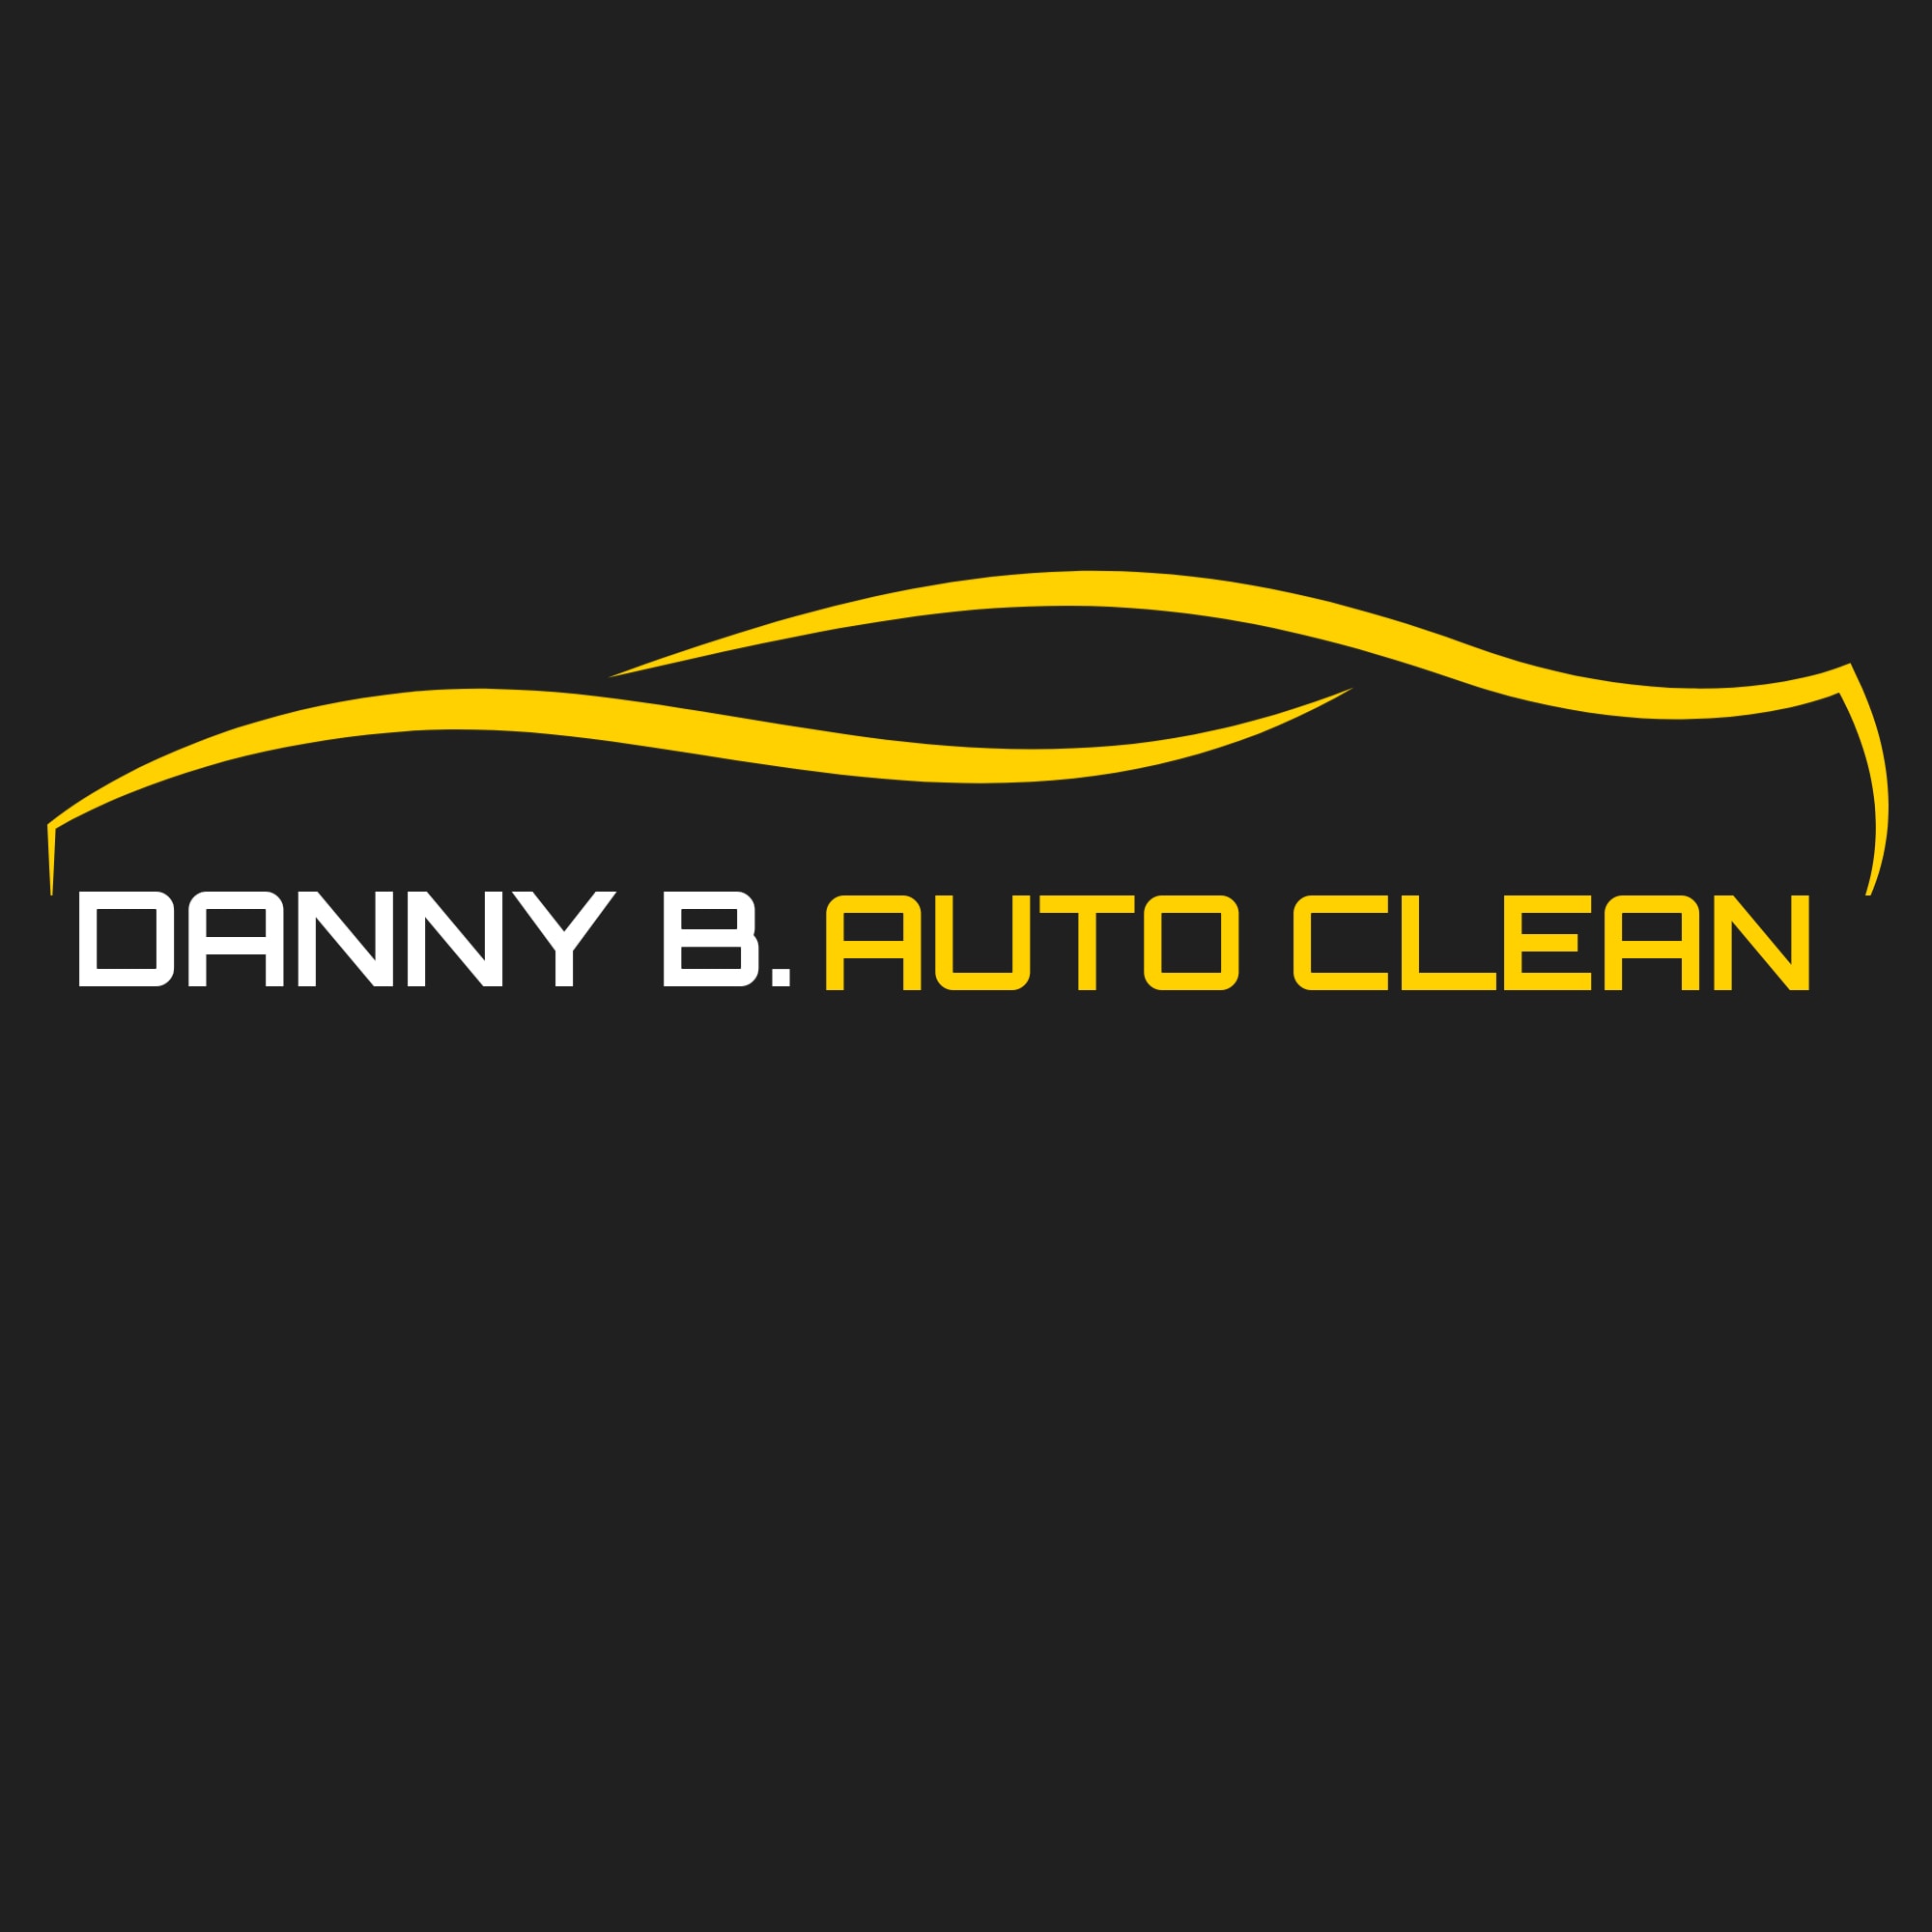 Danny B. Auto Clean